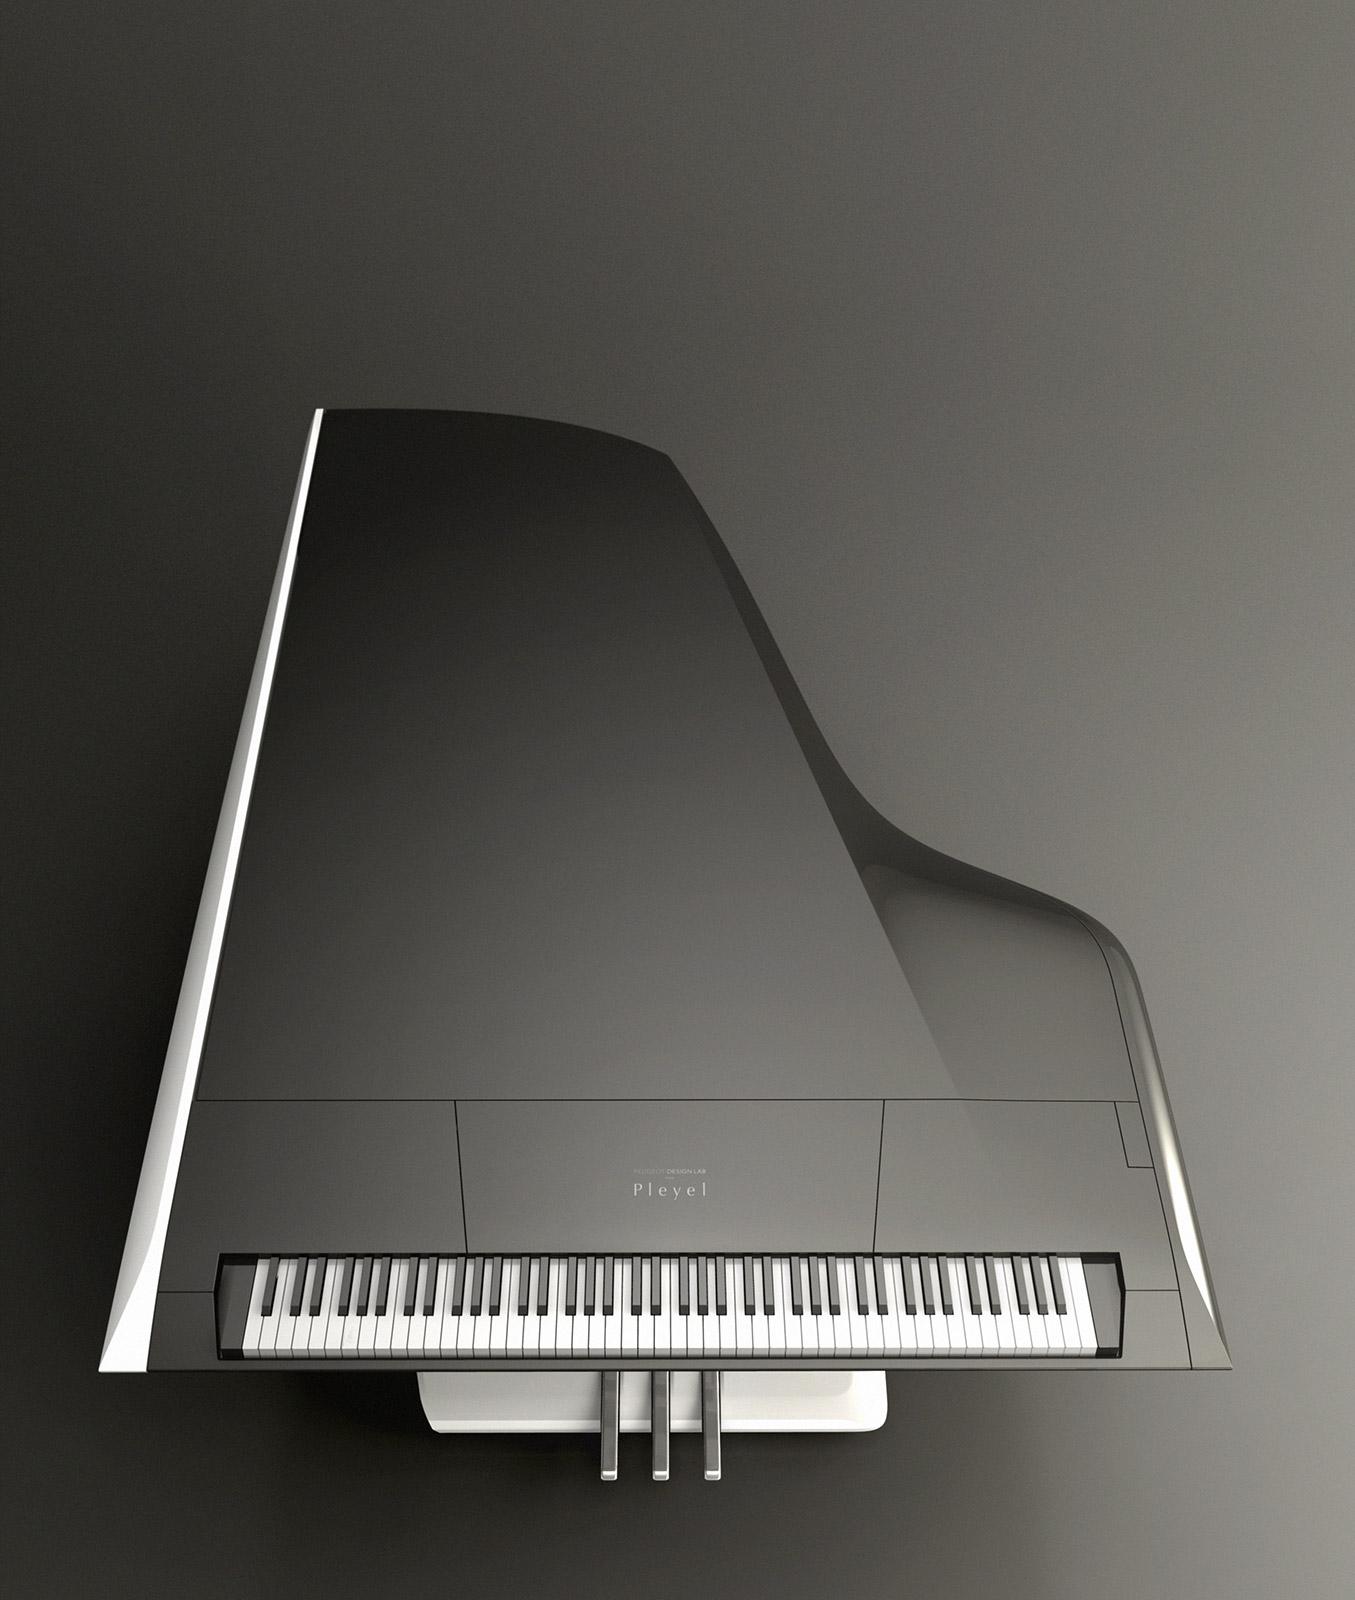 El piano futurista de